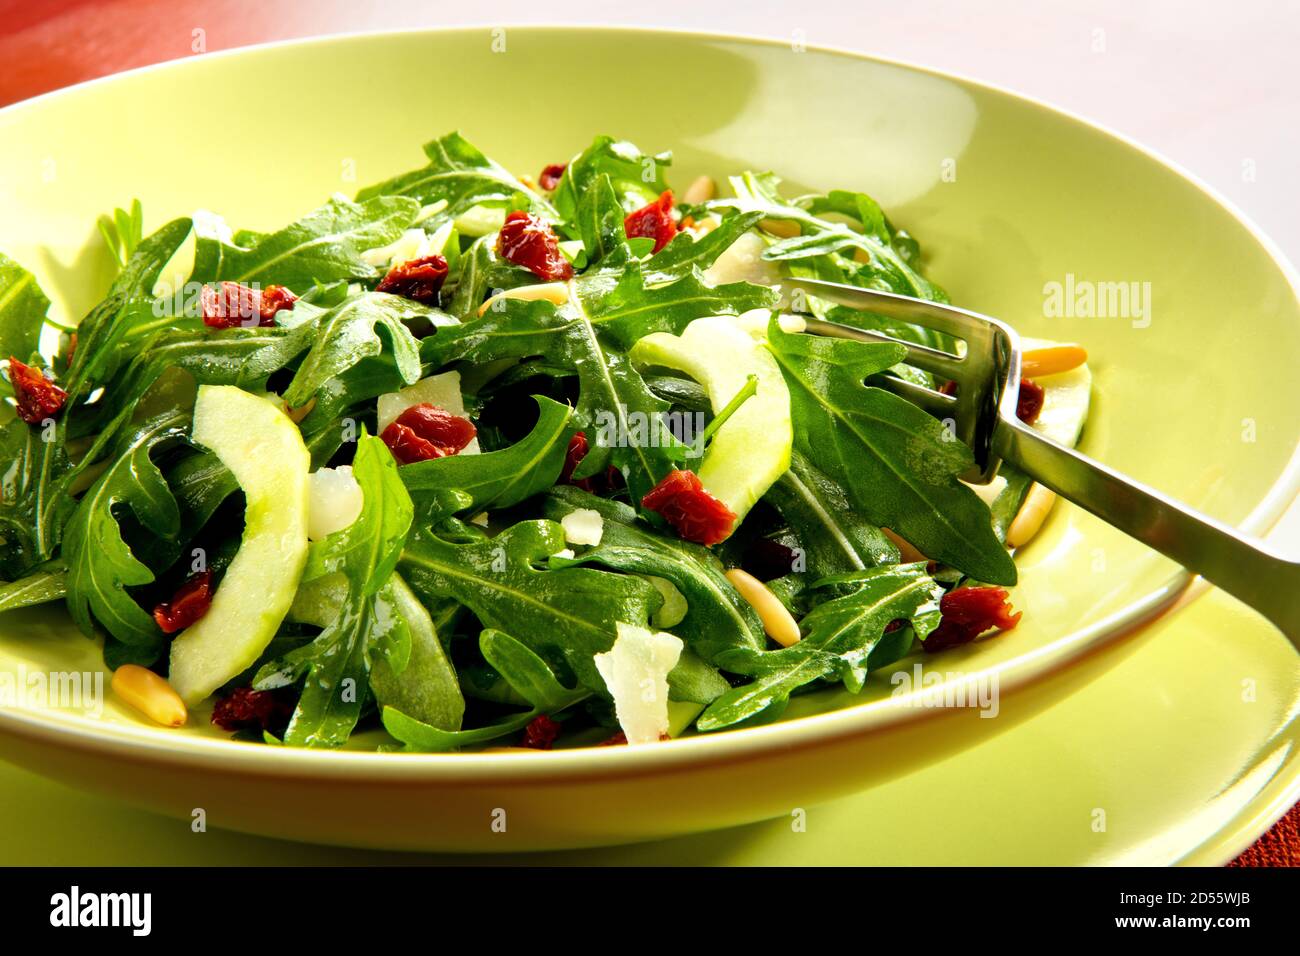 Rohkost, Salat italienischer Art mit Rucola, Gurke, getrockneten Tomaten und Pinienkernen. Stock Photo